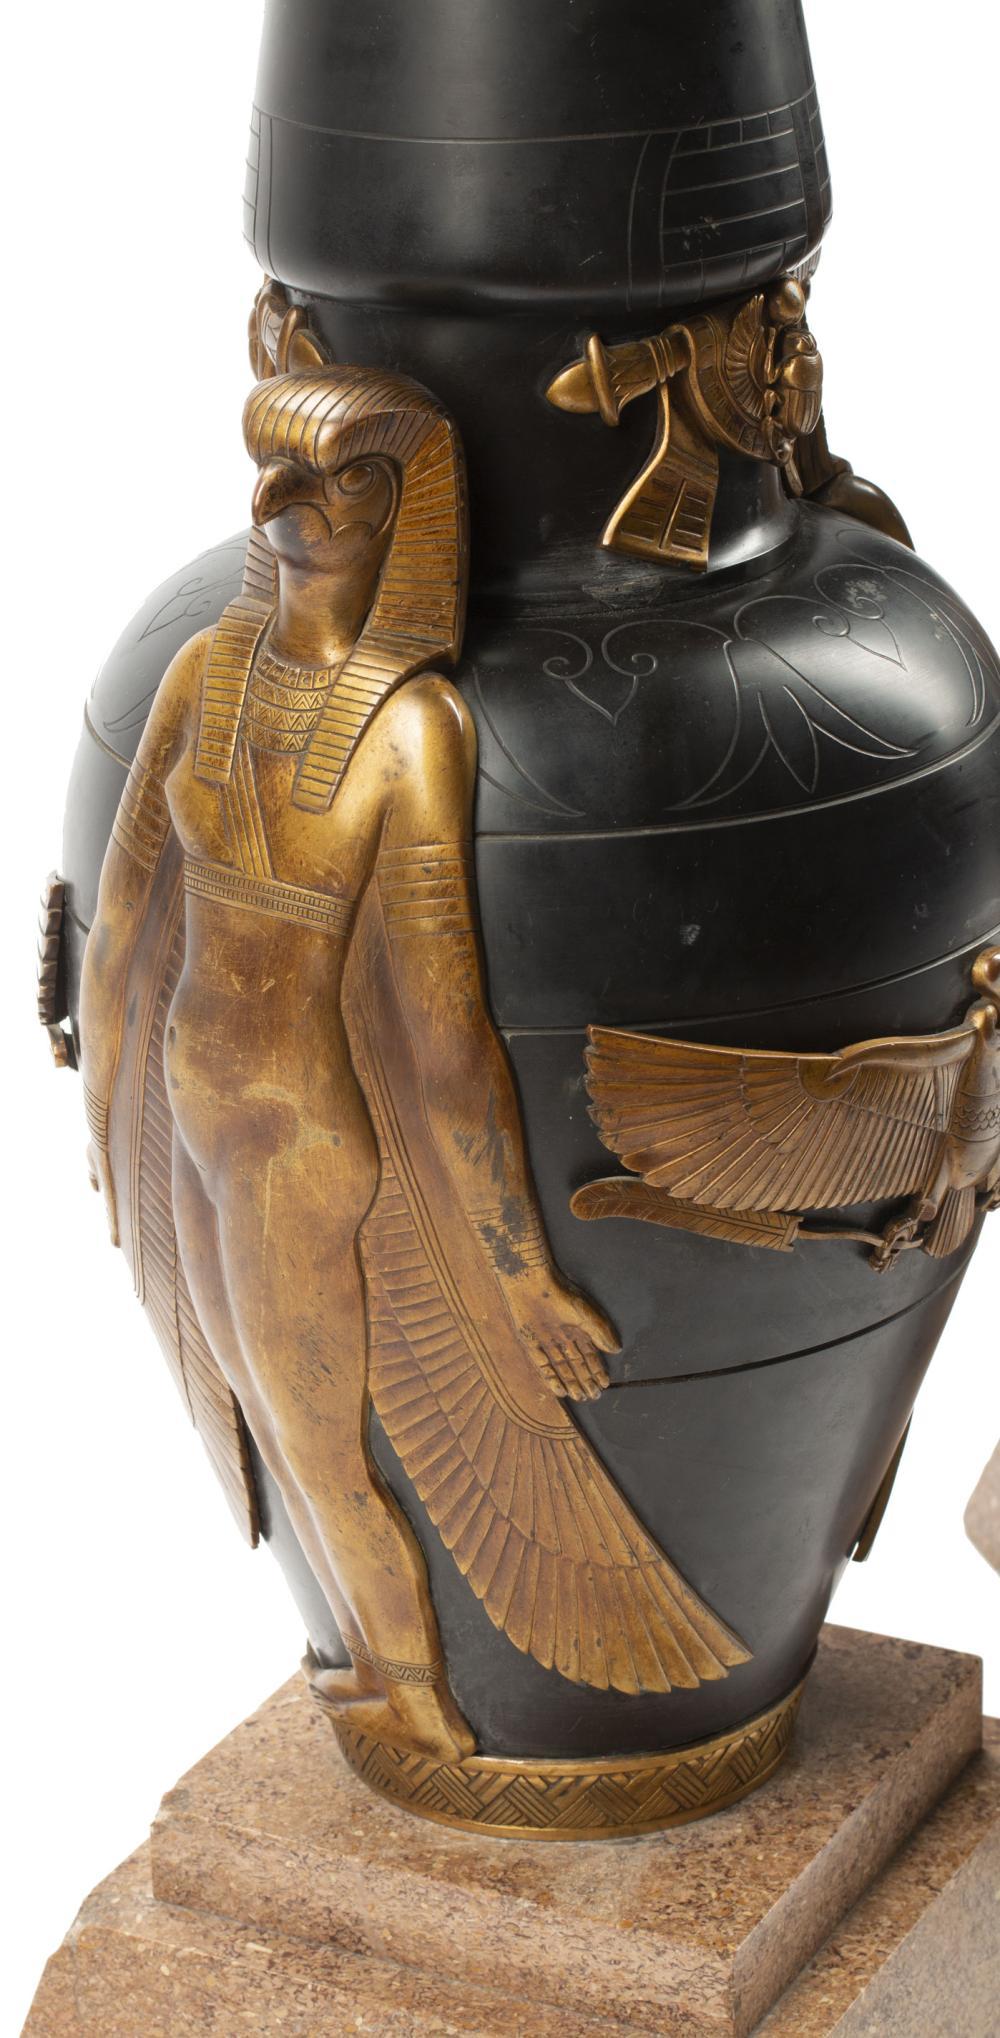 Paire de vases néo-égyptiens Art déco français, fabriqués en pierre d'ardoise noire avec des motifs gravés et des motifs égyptiens finement moulés et dorés, y compris des figures proéminentes du dieu du soleil, Horus, représenté sous la forme d'un